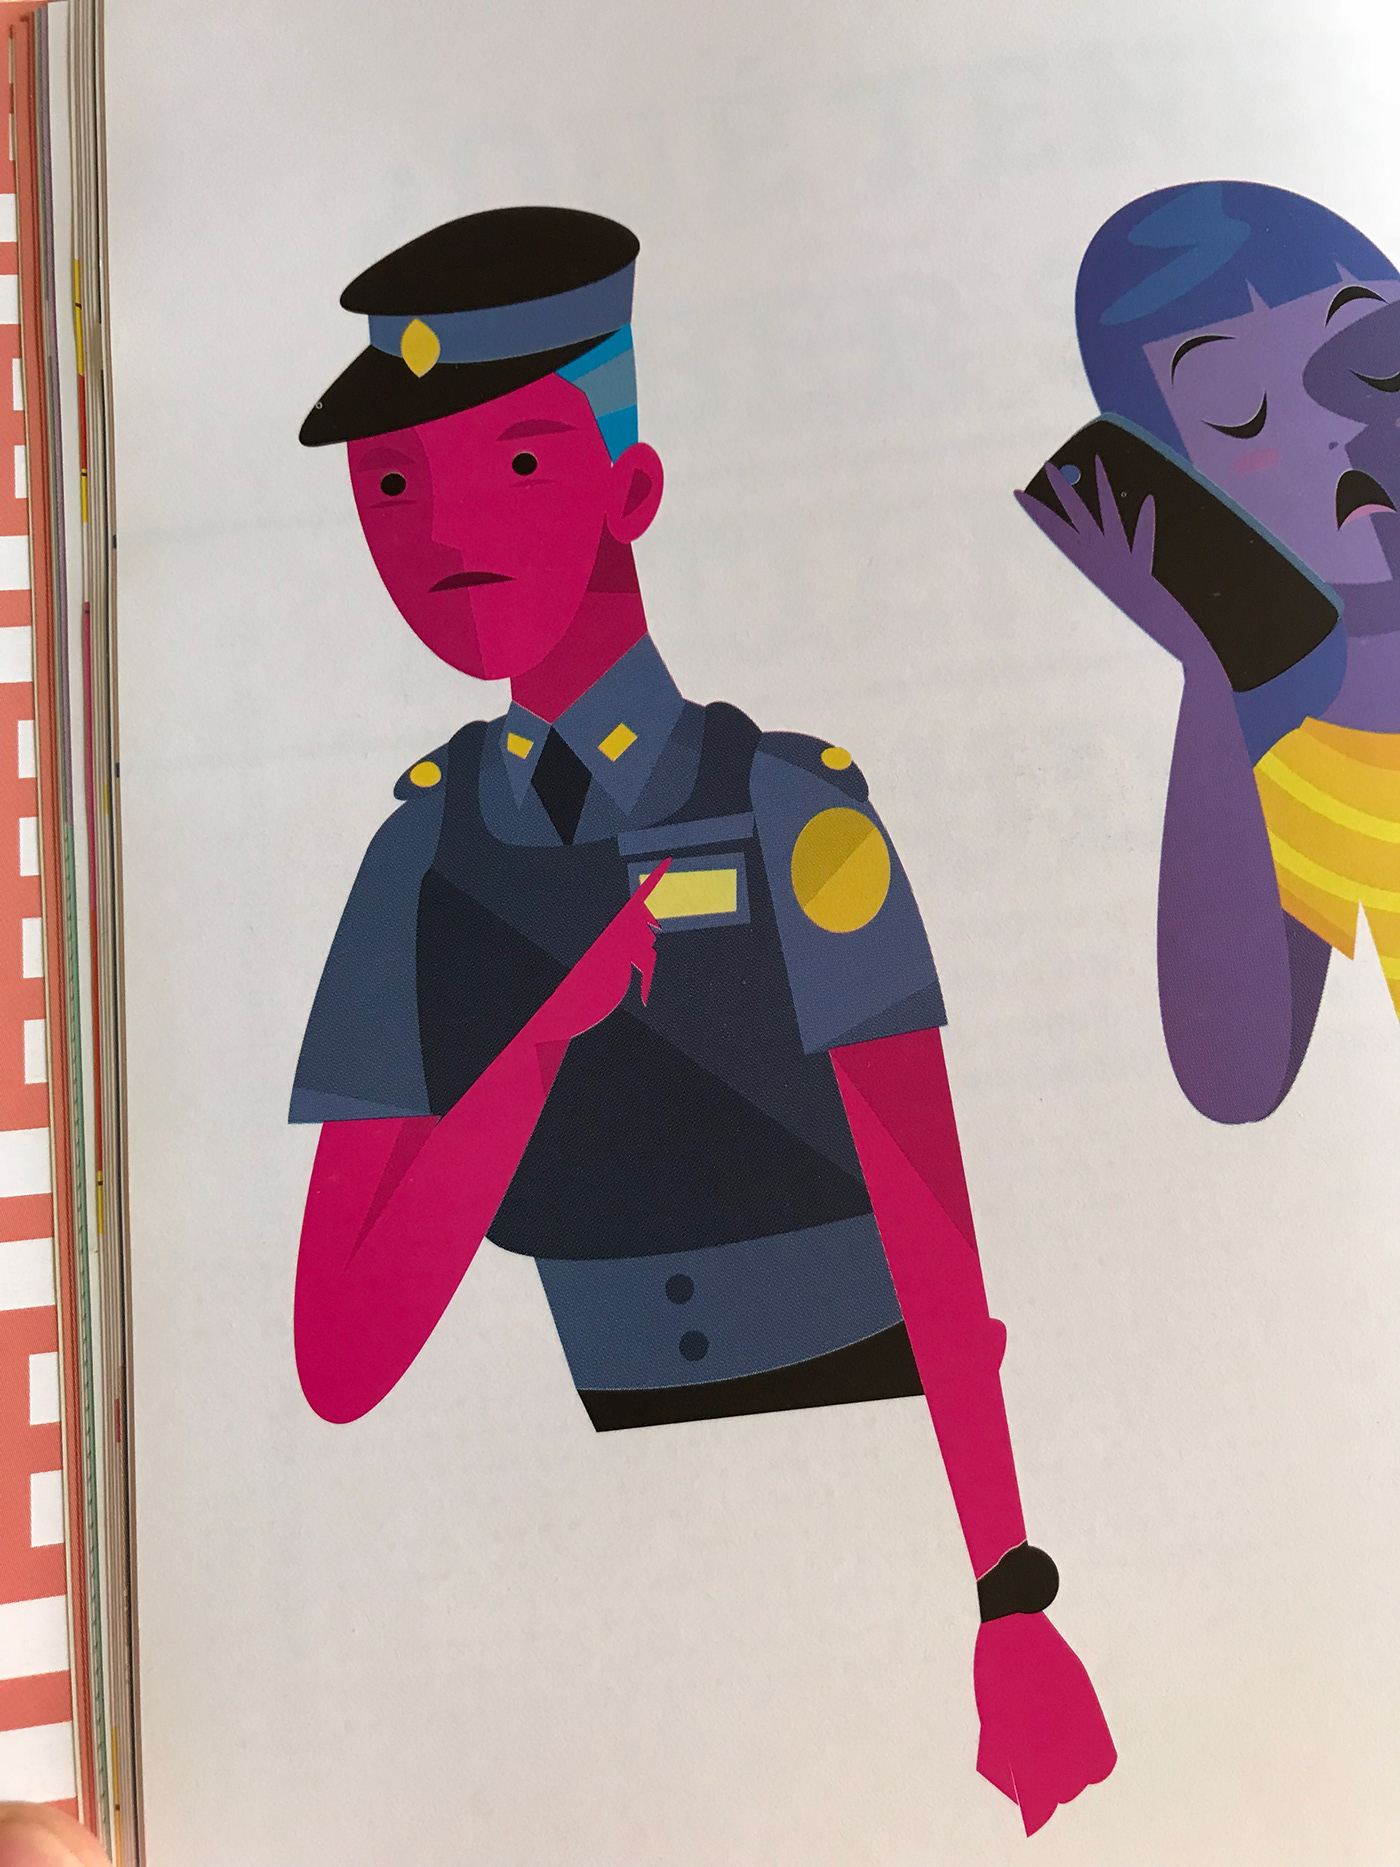 teenagers book rights Diversity editorial ilustracion Adolescentes derechos Young police